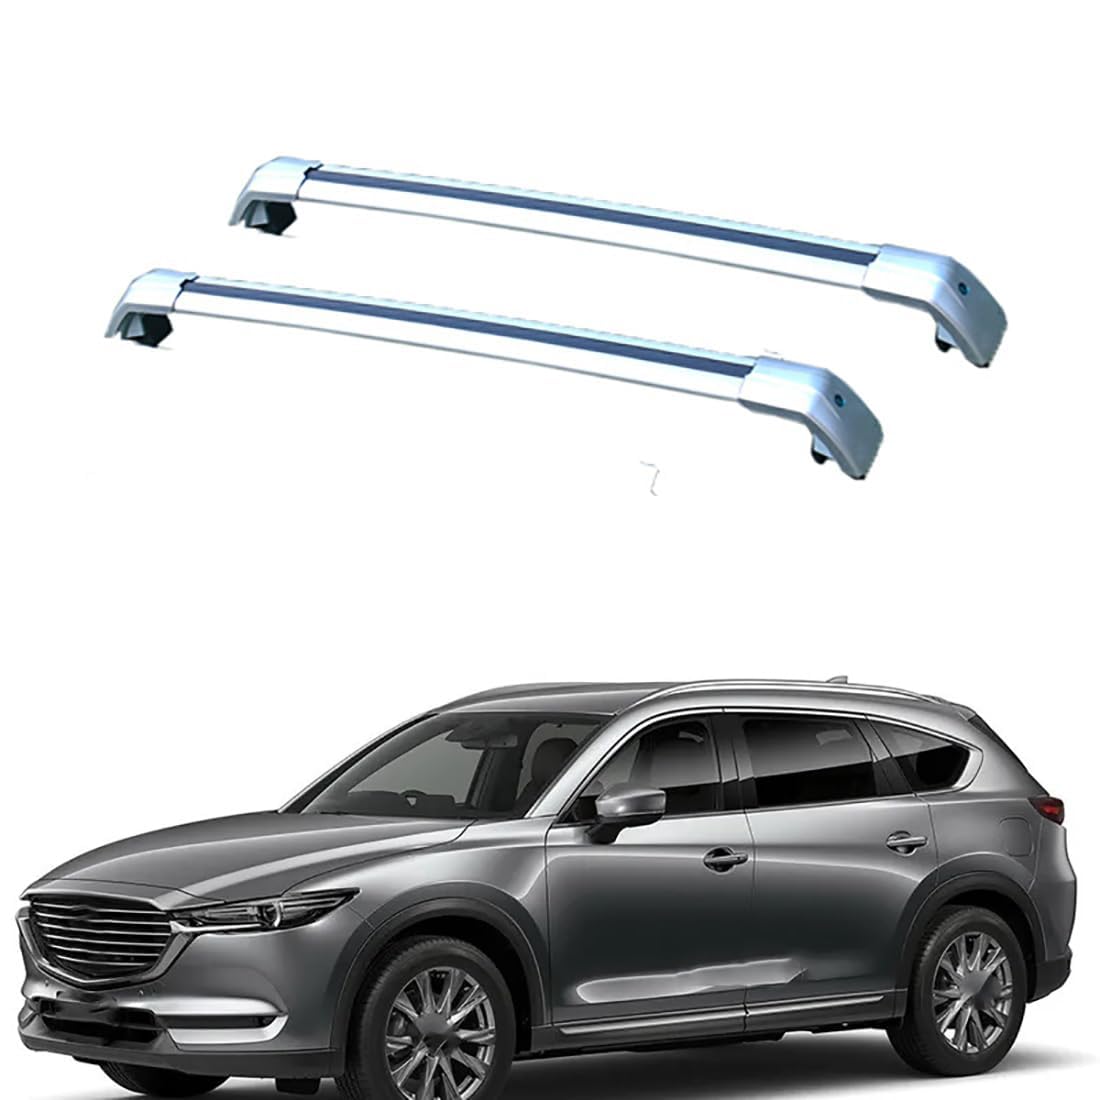 2 Stück Auto Dachträger für Mazda CX8 5door SUV 2018+, Aluminium Dachgepäckträger Dachgepäckablage Querträger Relingträger, Lastenträger GepäCktransport Zubehör,B-Silver von ZDJBFA